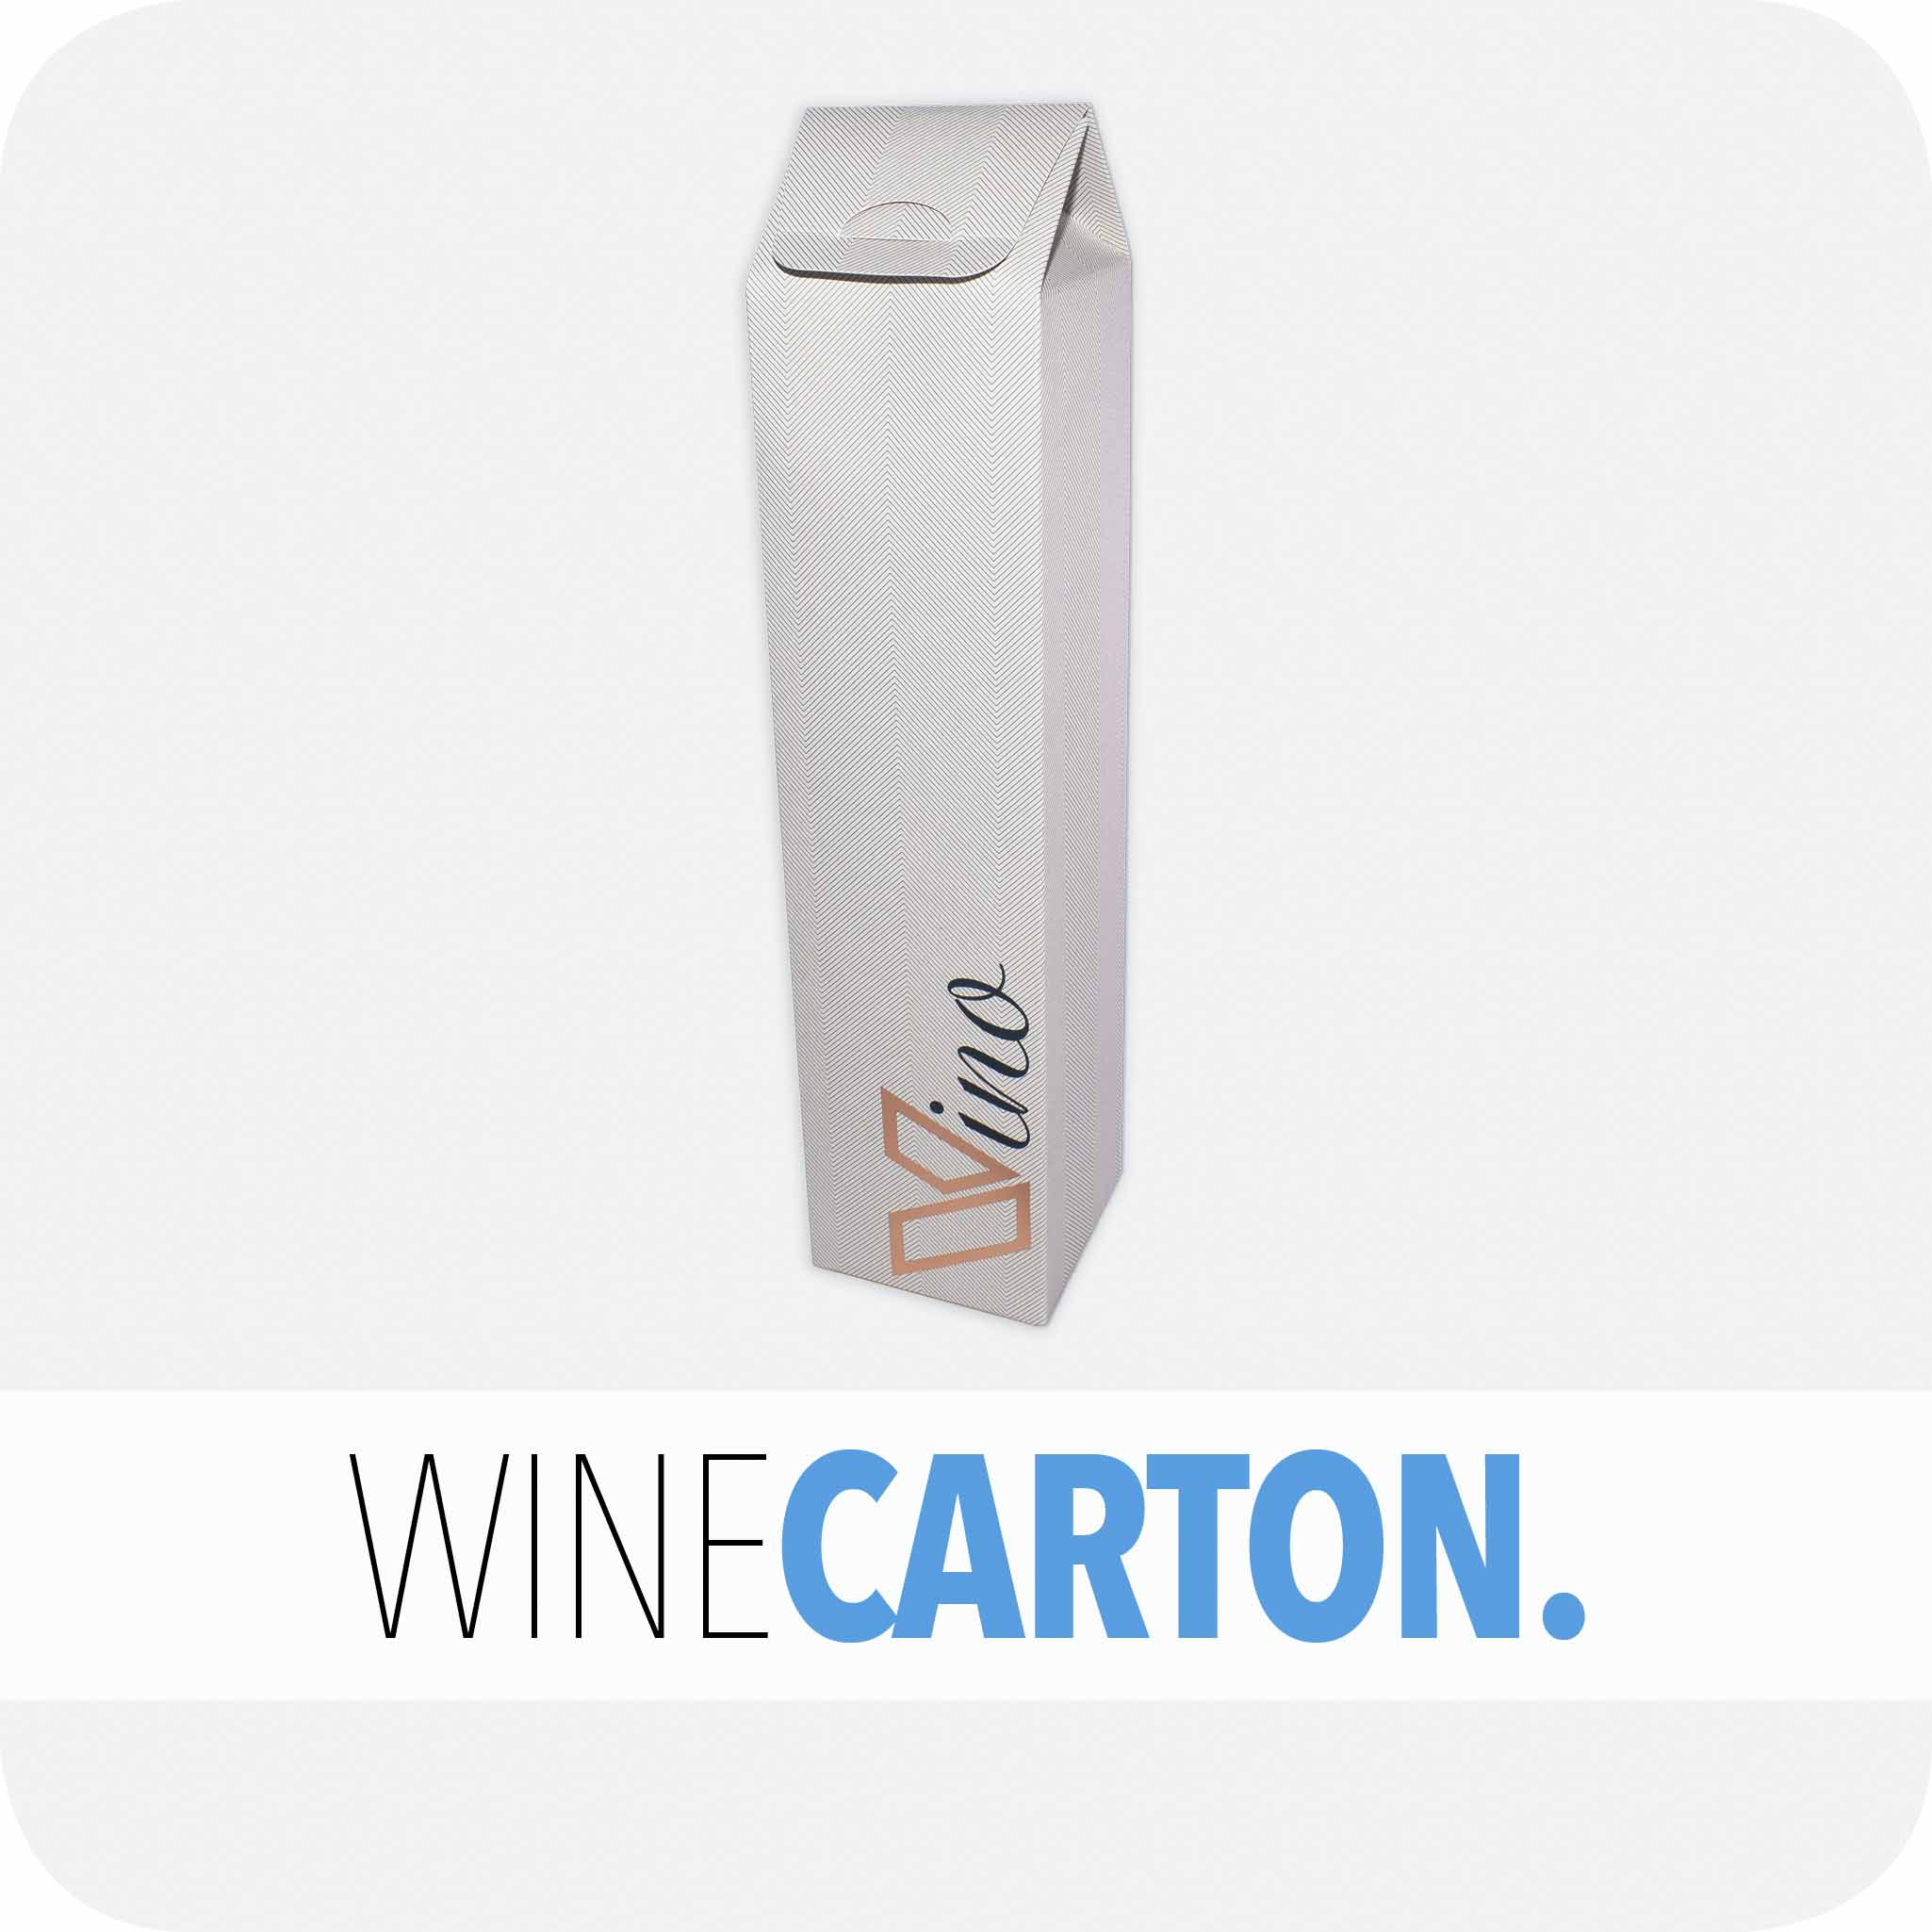 Winecarton